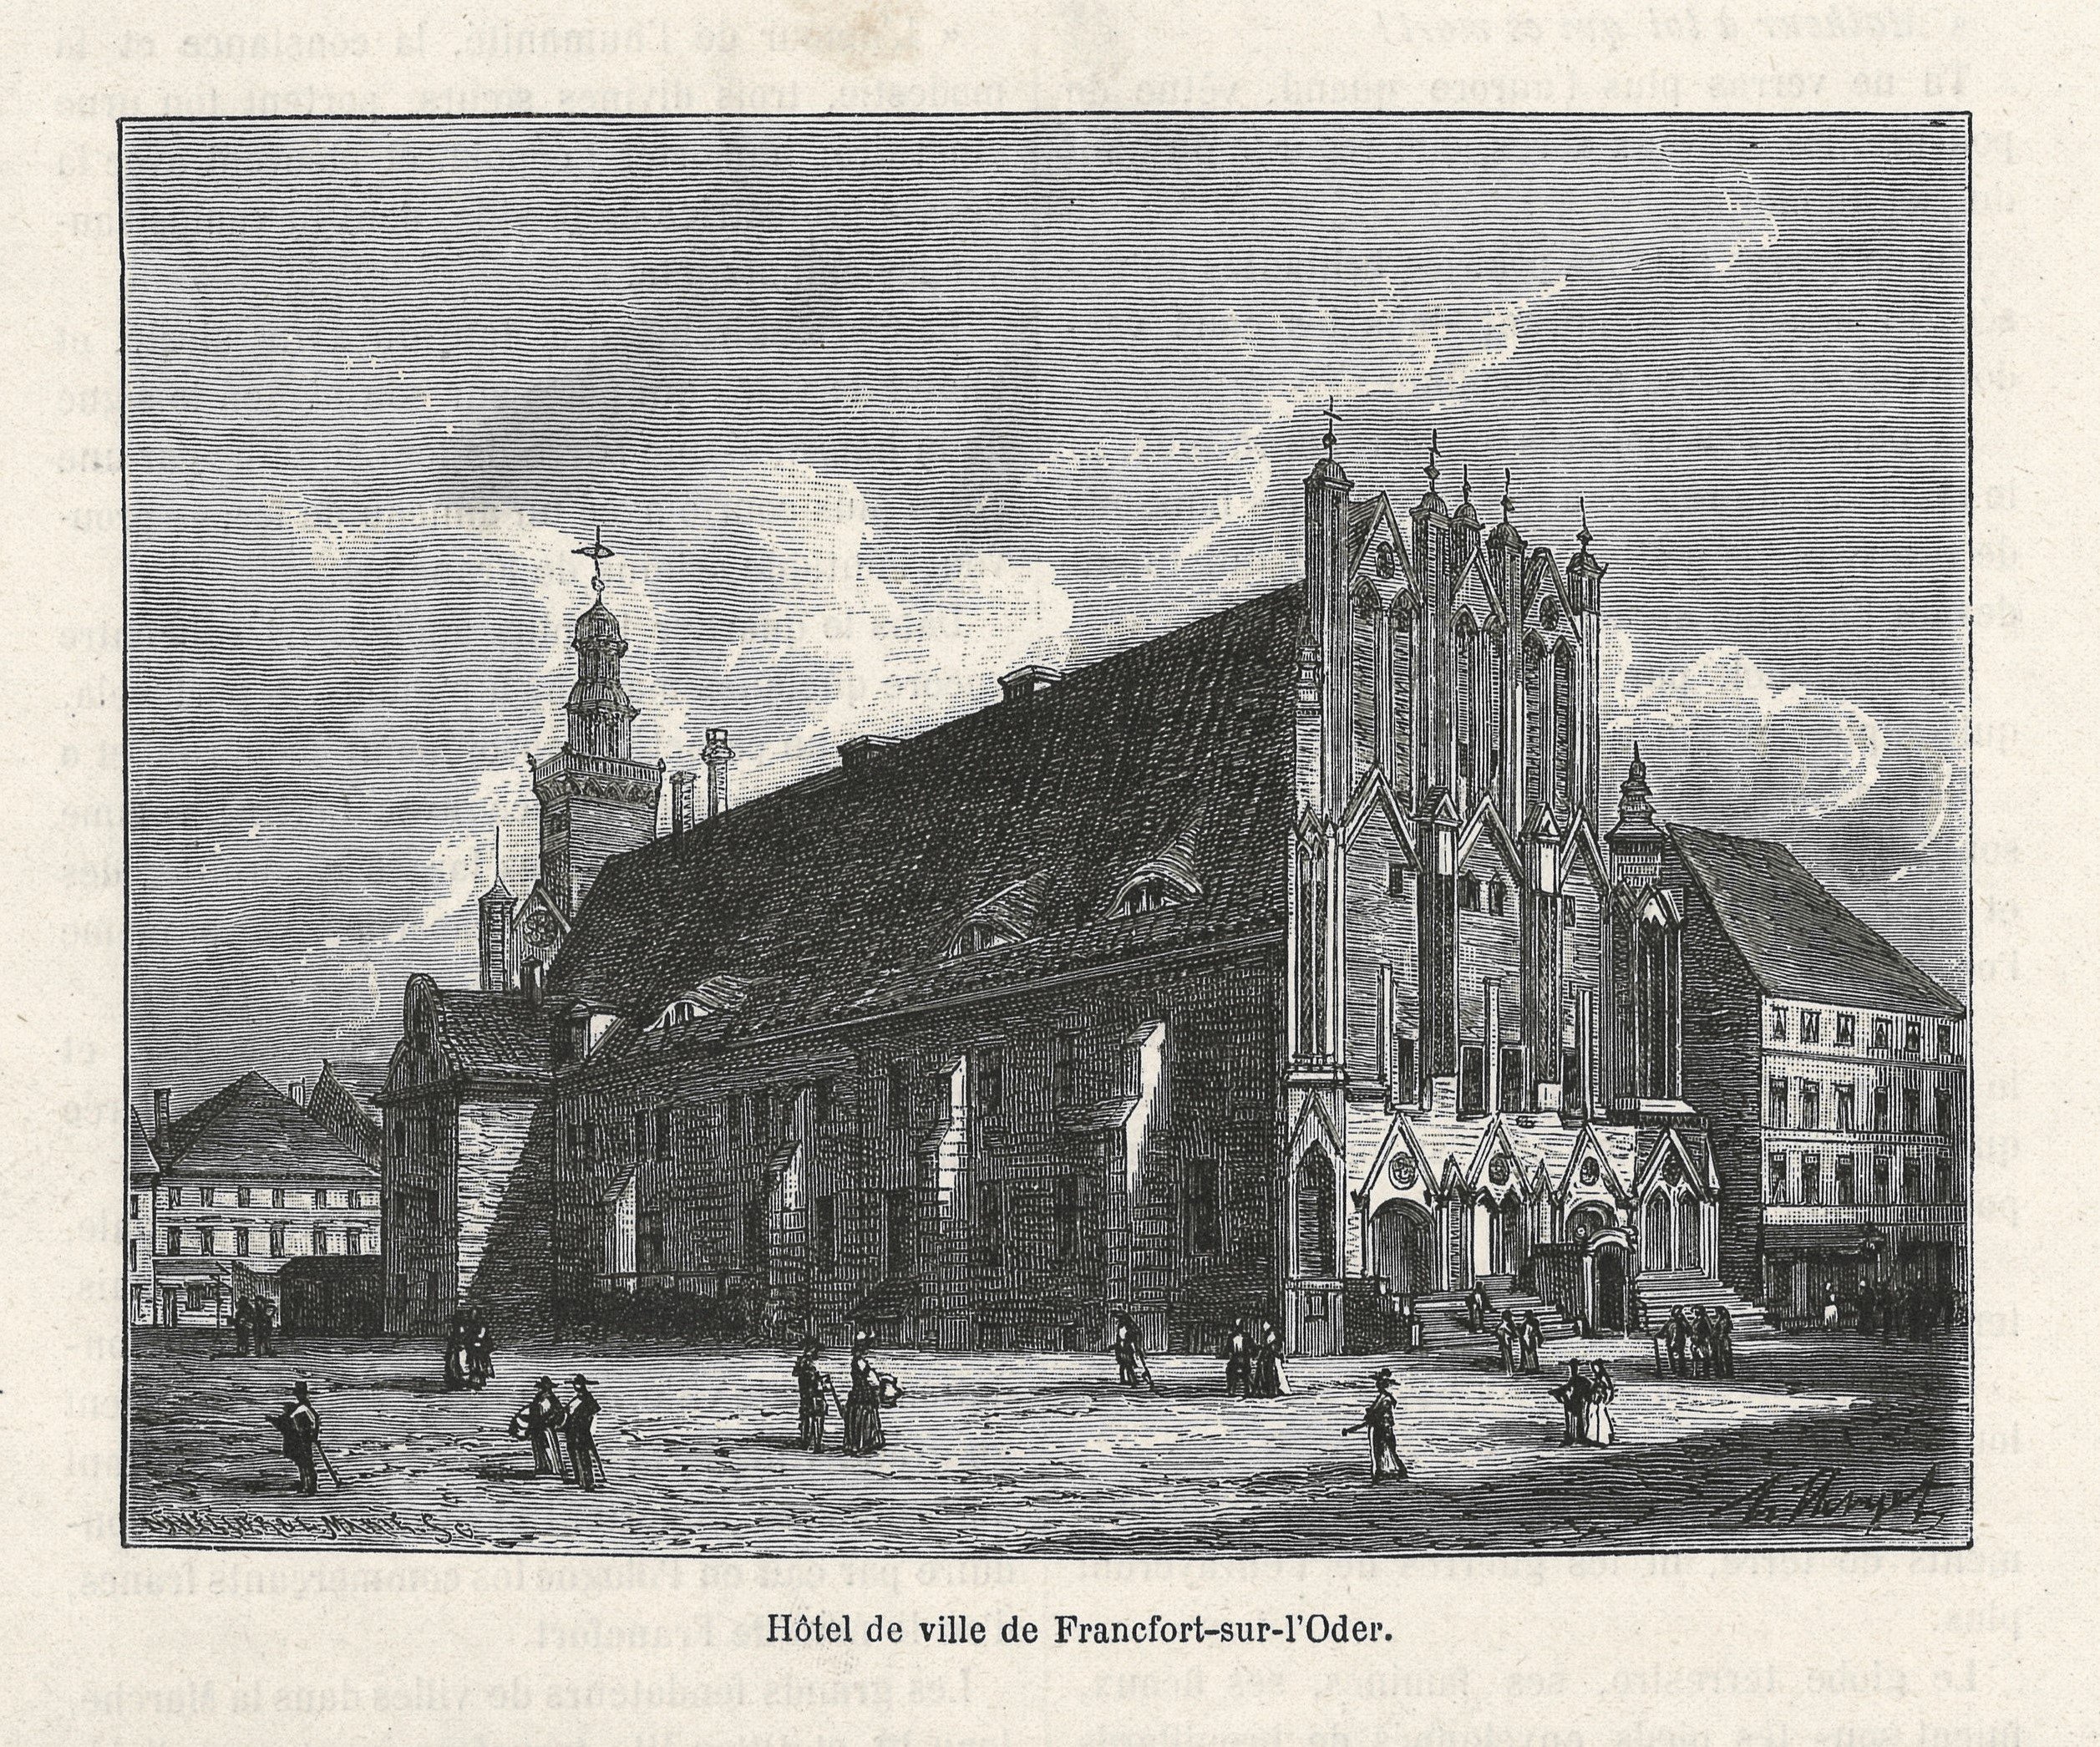 Frankfurt (Oder): Rathaus von Südwesten (Landesgeschichtliche Vereinigung für die Mark Brandenburg e.V., Archiv CC BY)